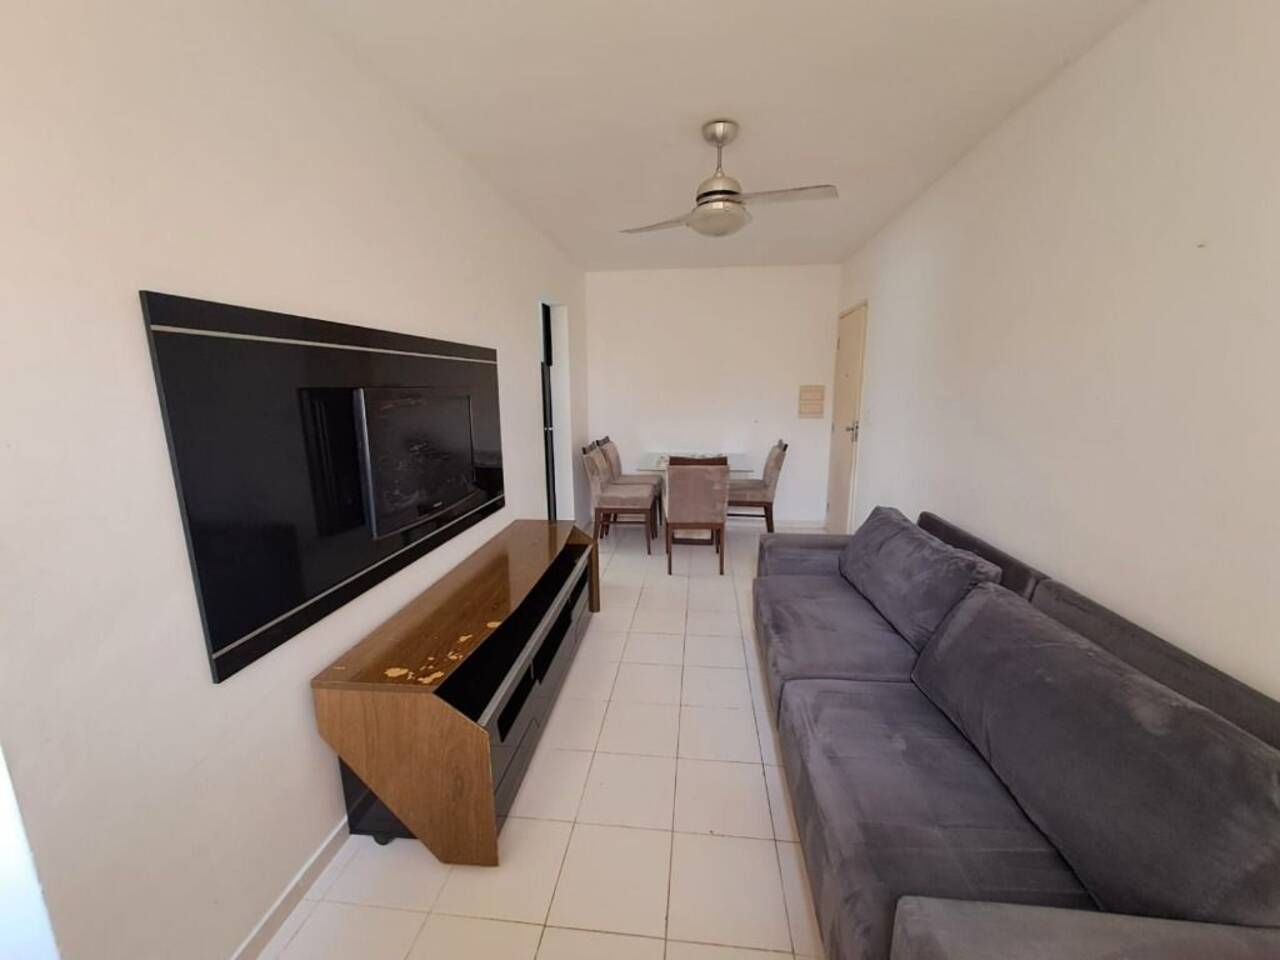 Apartamento Inácio Barbosa, Aracaju - SE